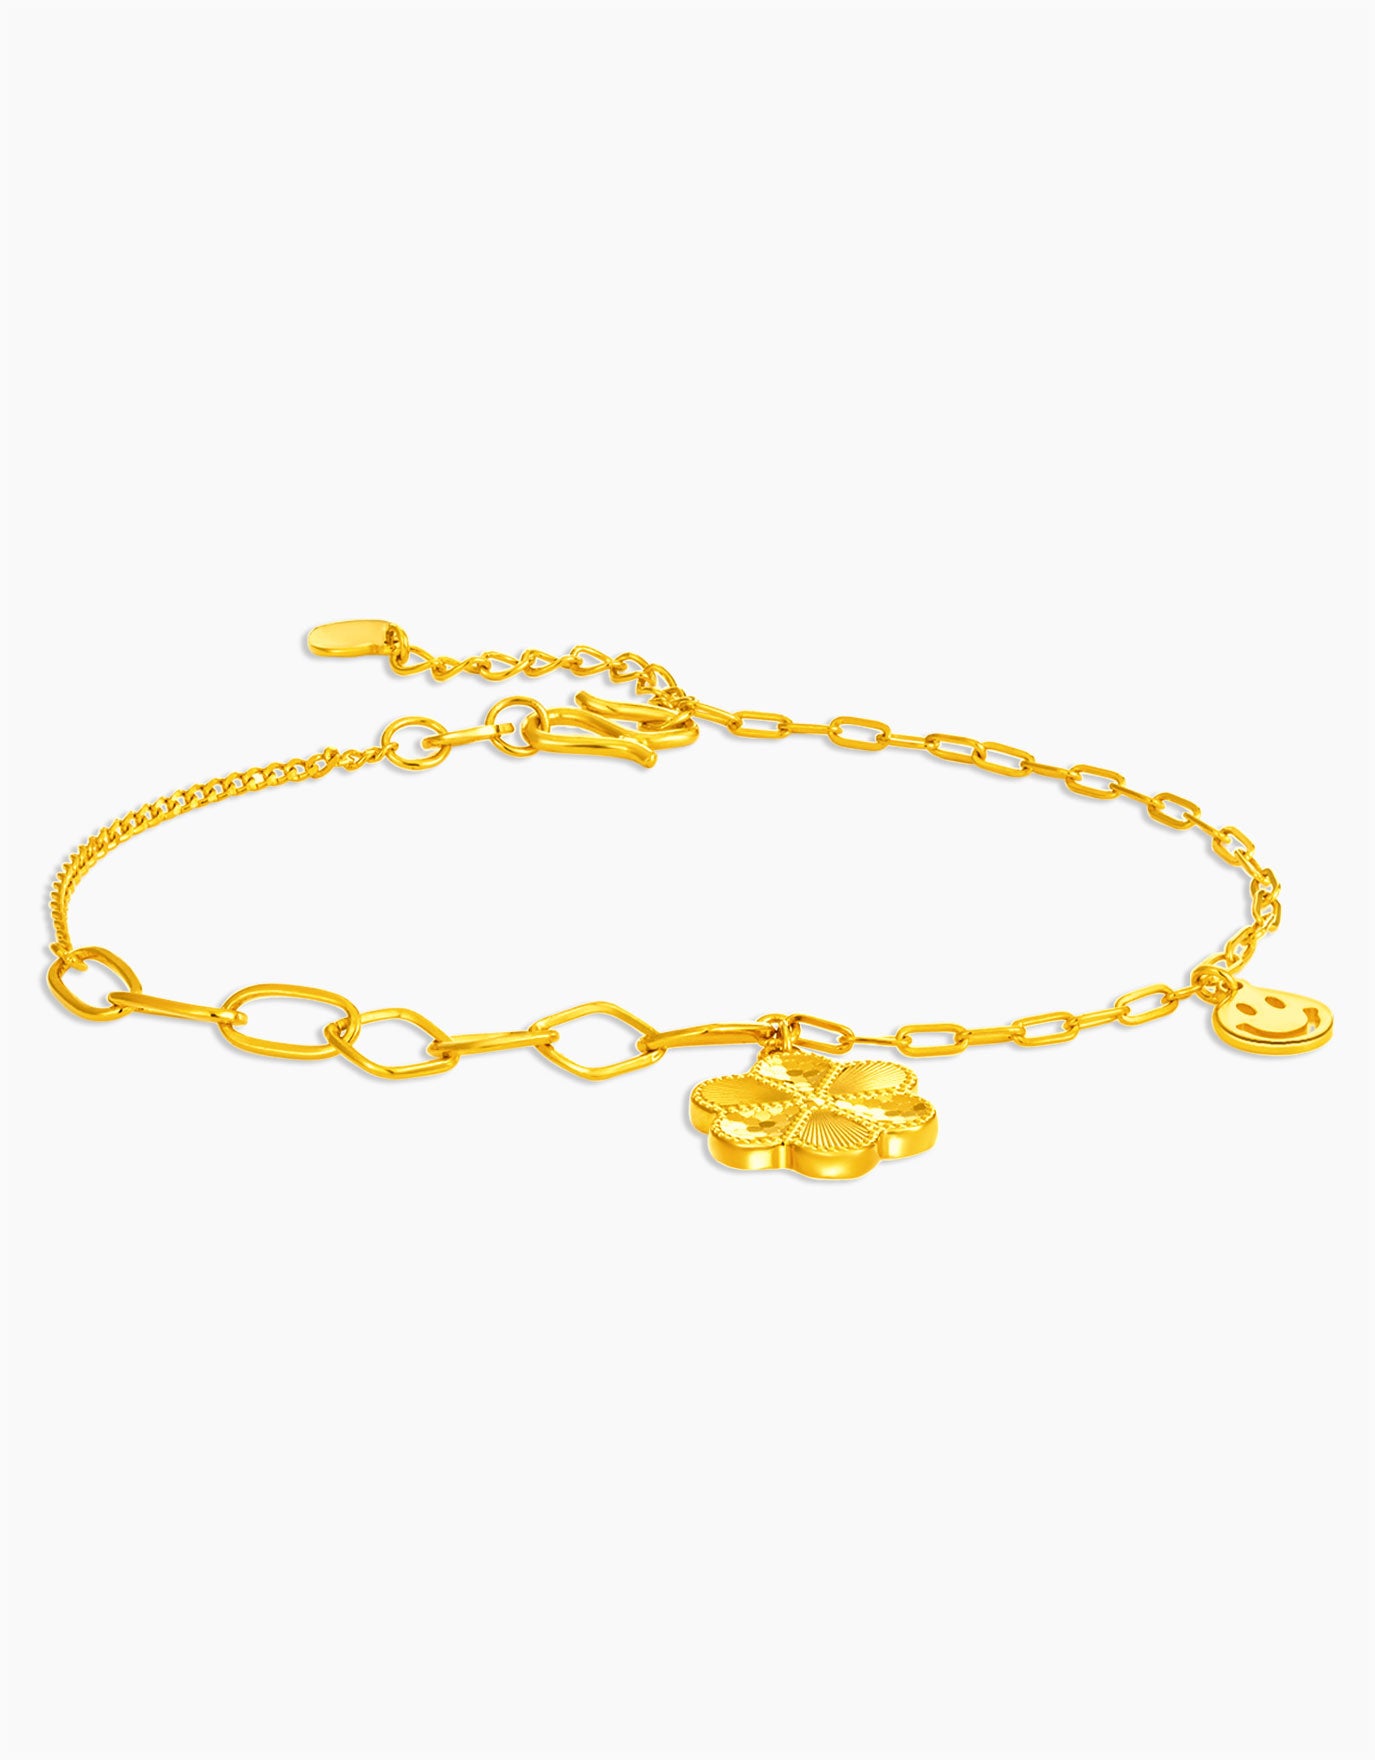 LVC 9IN Beaming Flower 999 Gold Bracelet